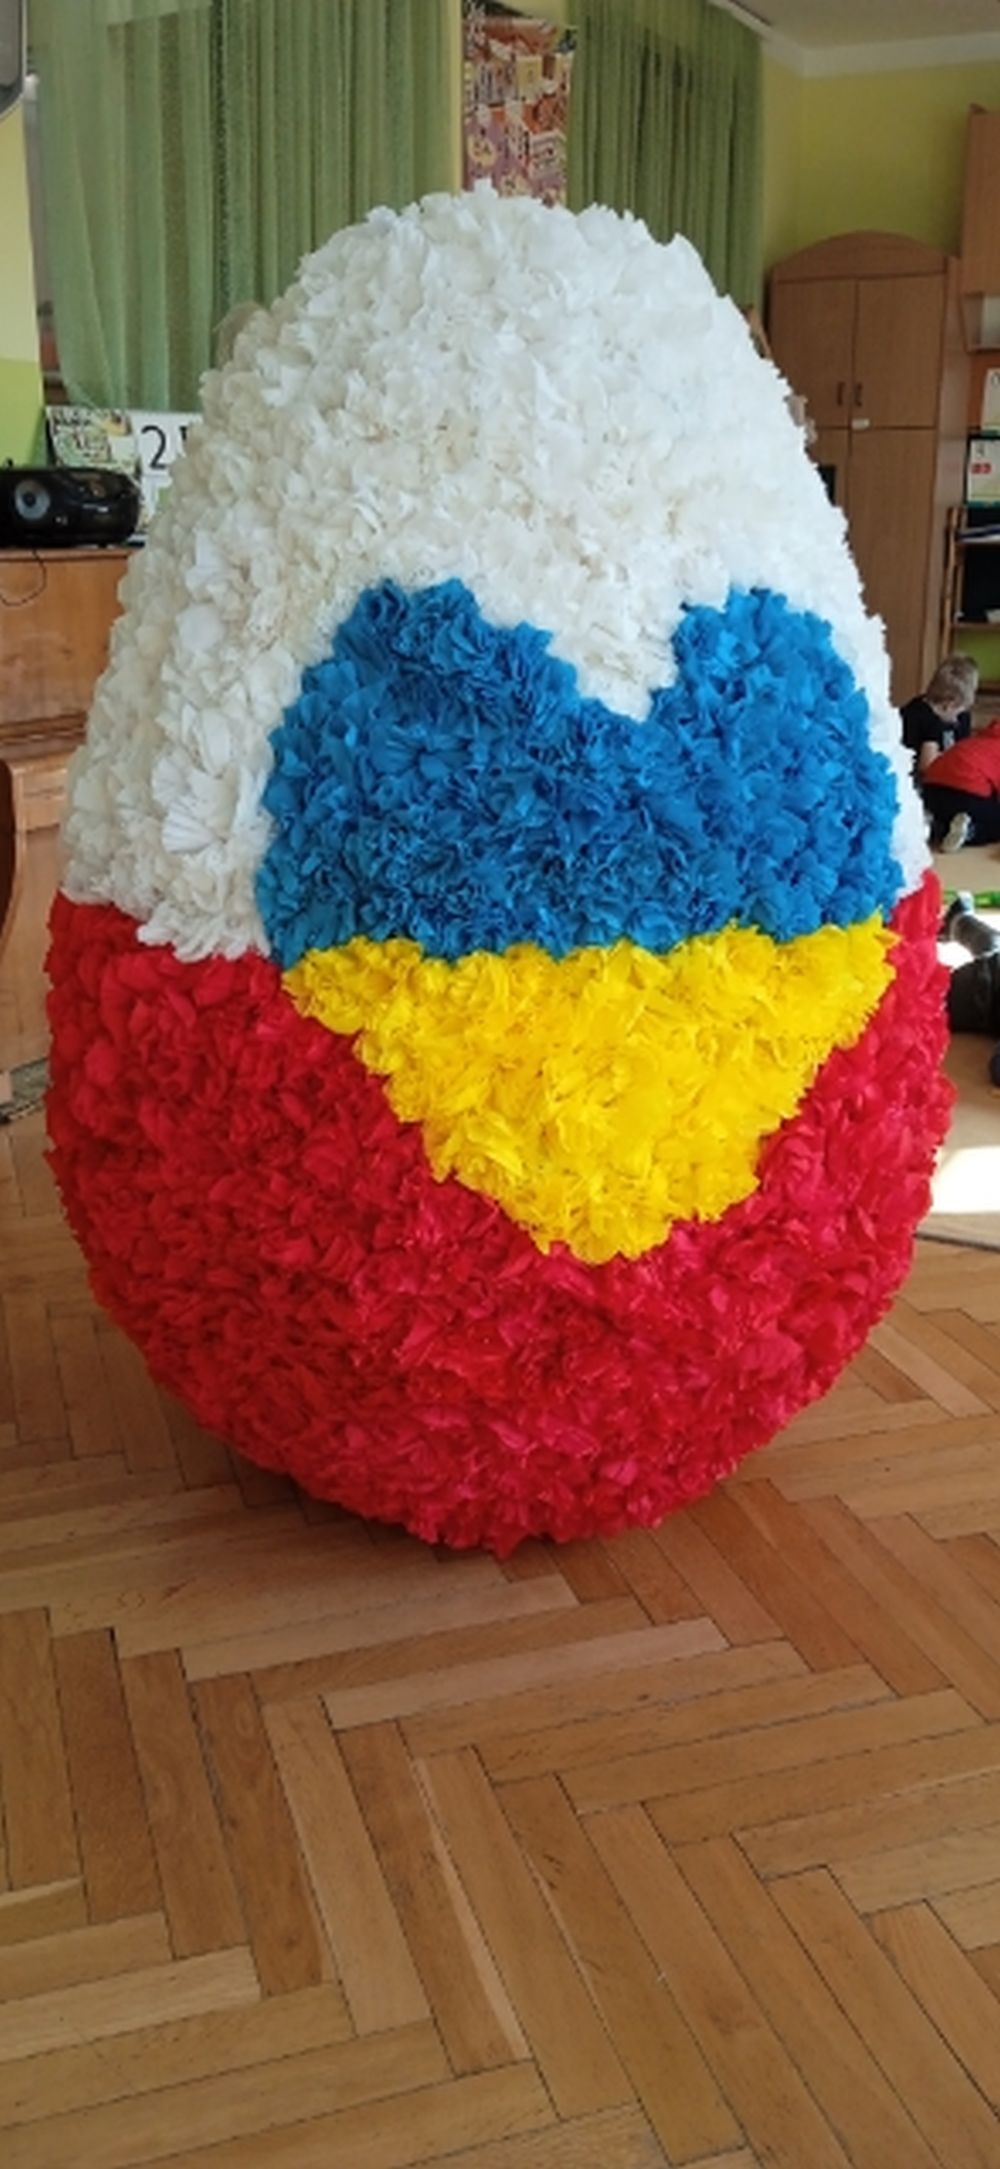 Na zdjęciu jest wielkie jajko styropianowe ozdobione różyczkami z krepiny. Jajko jest w barwach biało czerwonych, a na środku jest żółto niebieskie serce.